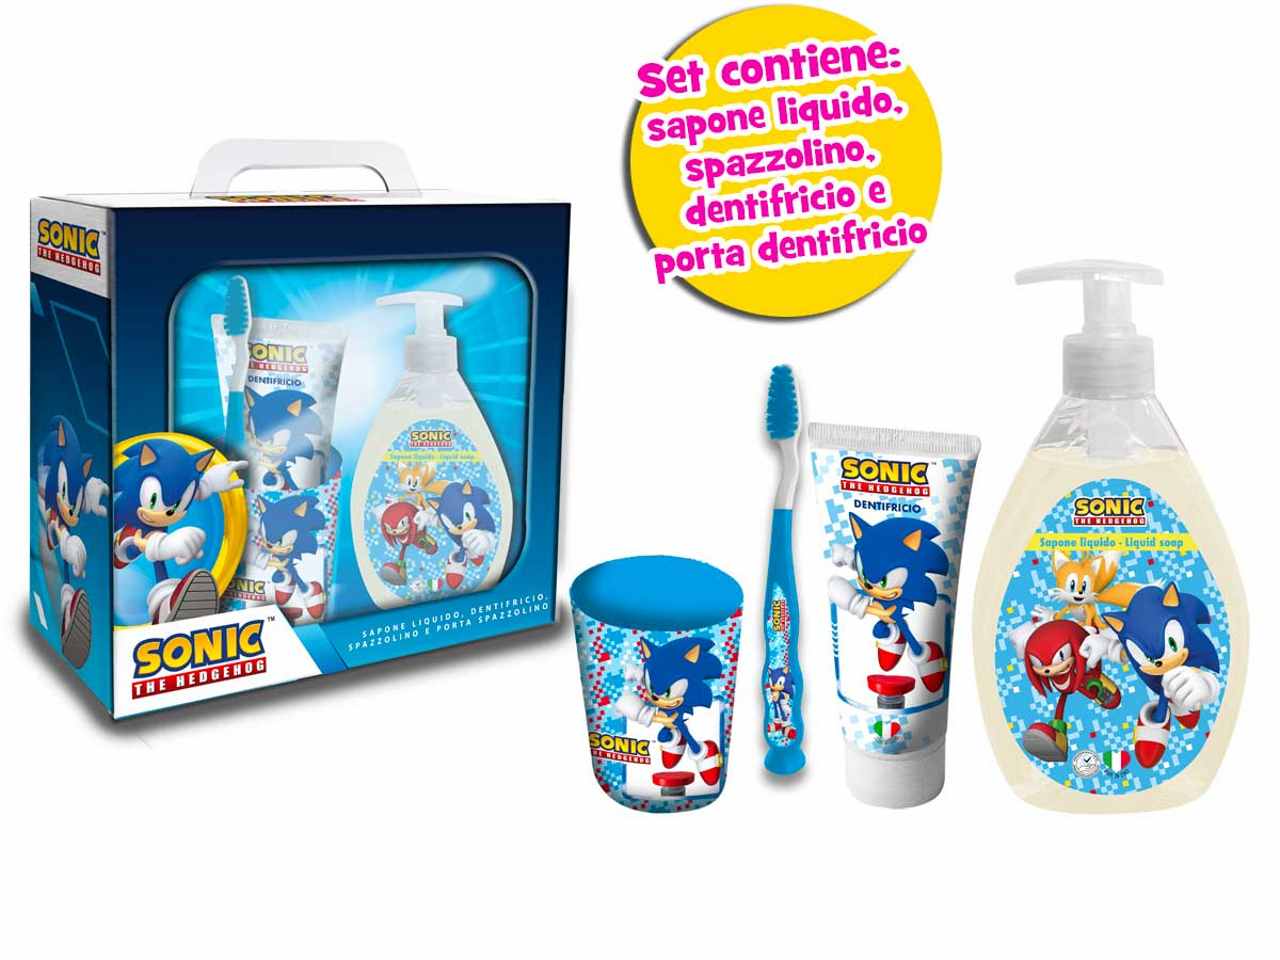 Sonic set regalo. contenuto: sapone mani, spazzolino, dentrificio, porta  dentifricio